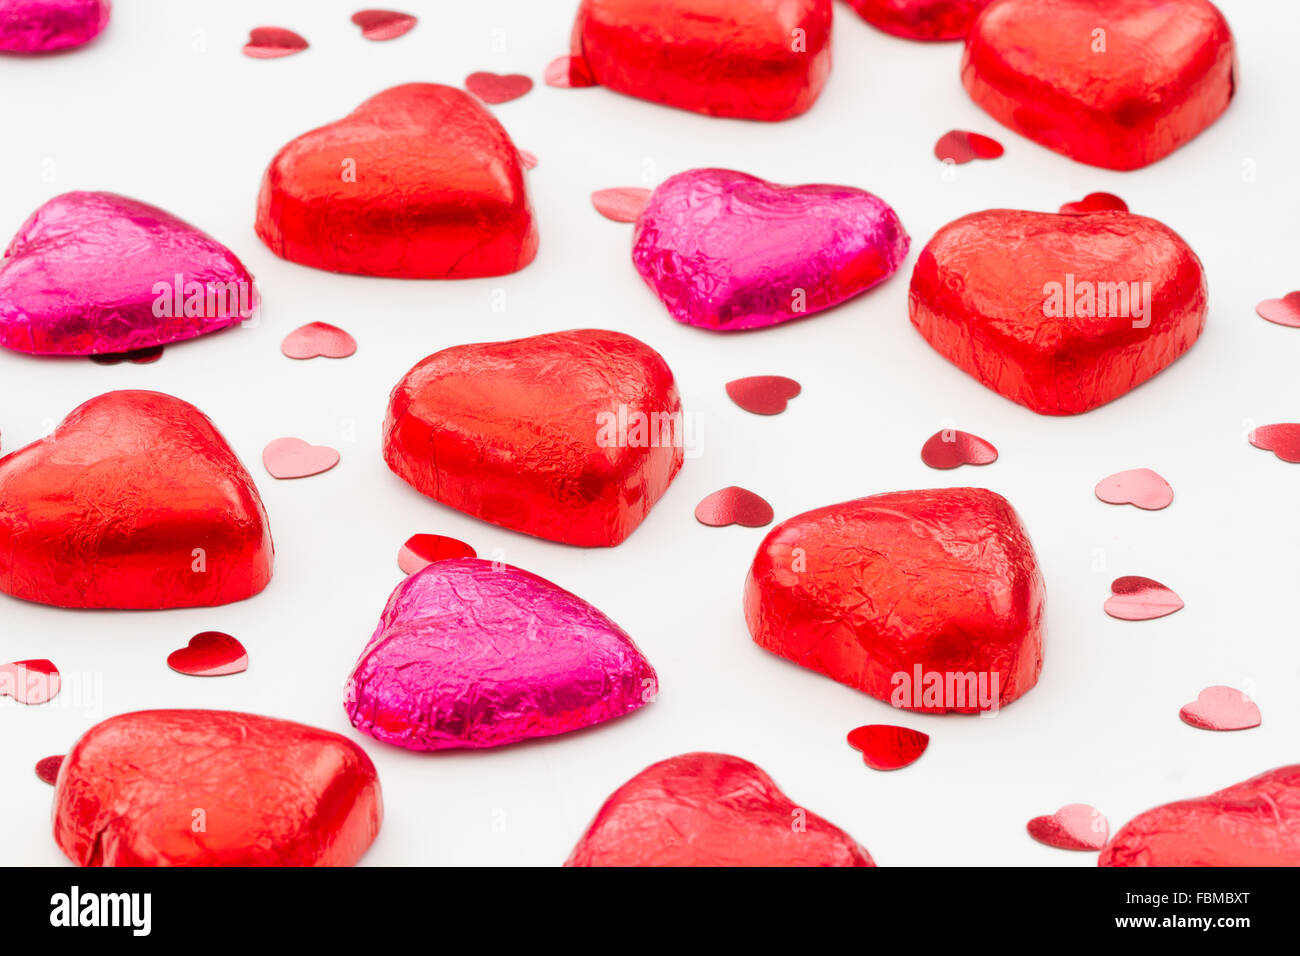 En forme de coeur, saint valentin chocolats sur un fond blanc. Banque D'Images